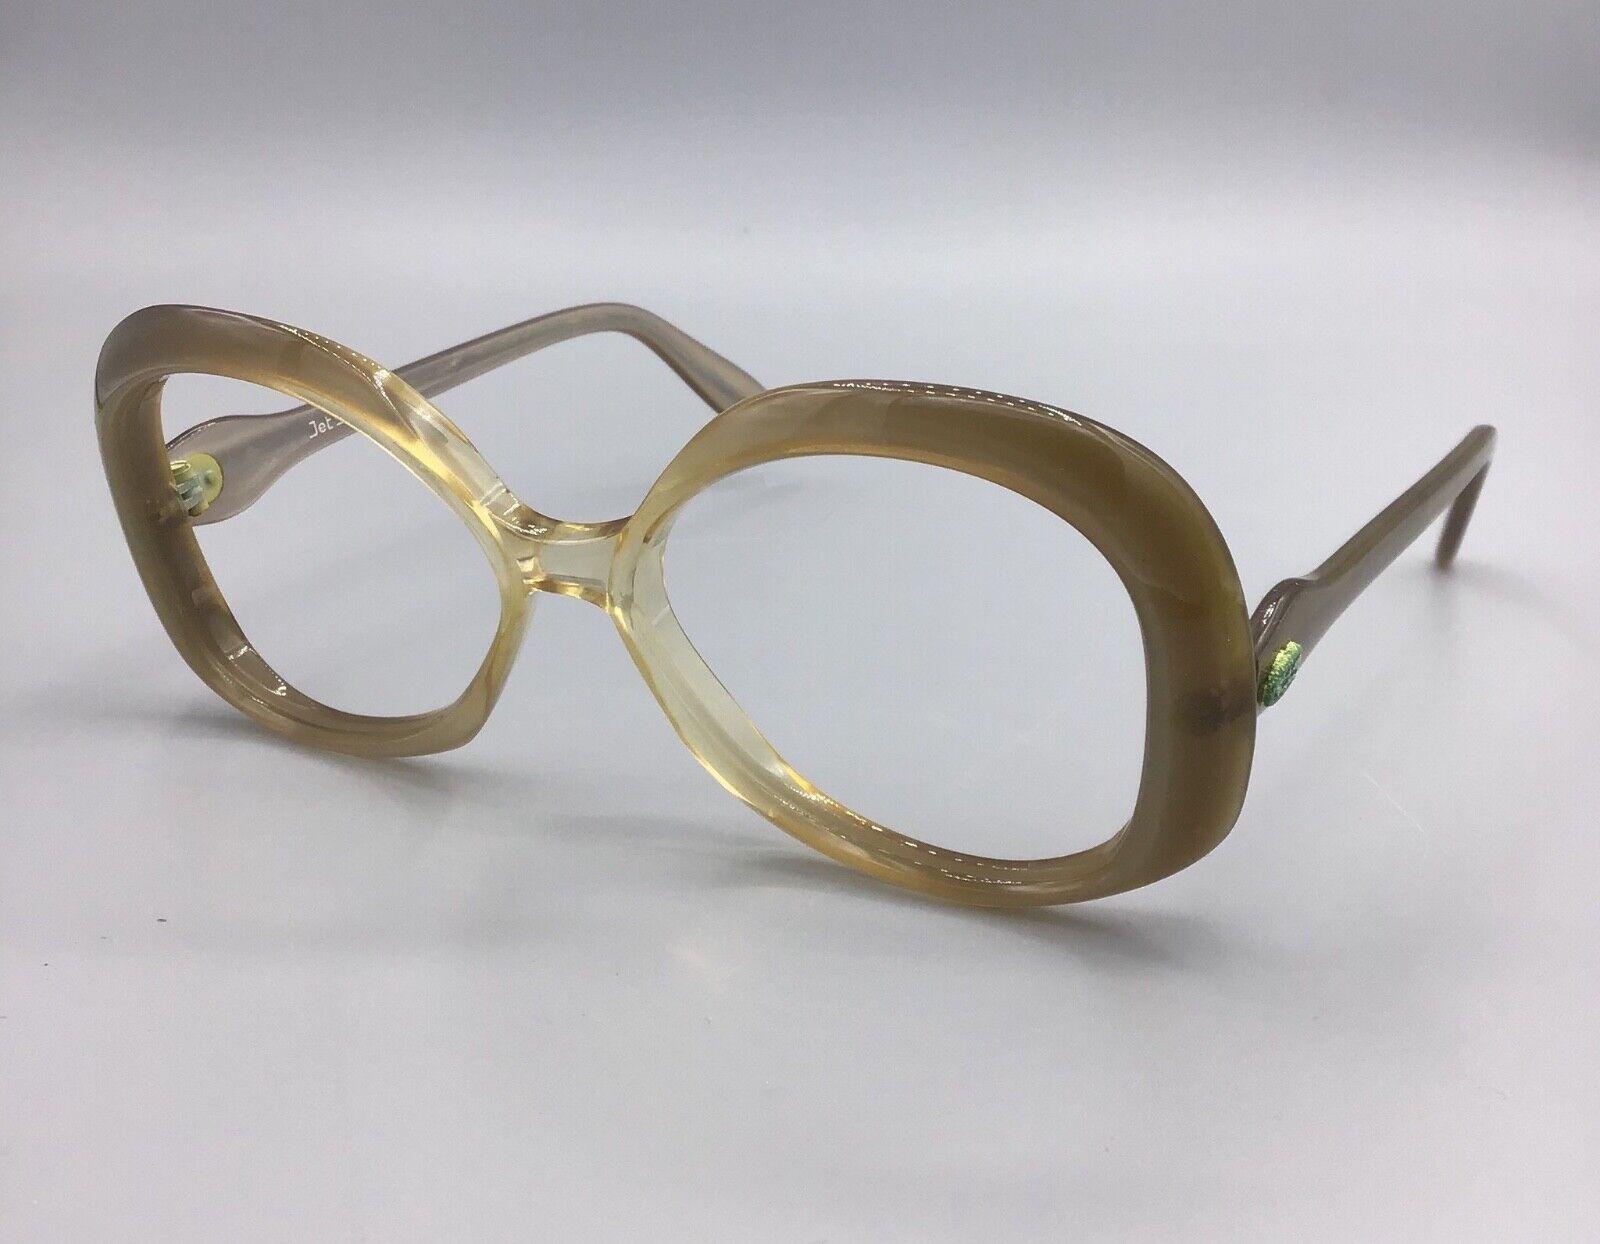 Jet Set occhiale vintage Eyewear brillen lunettes gafas